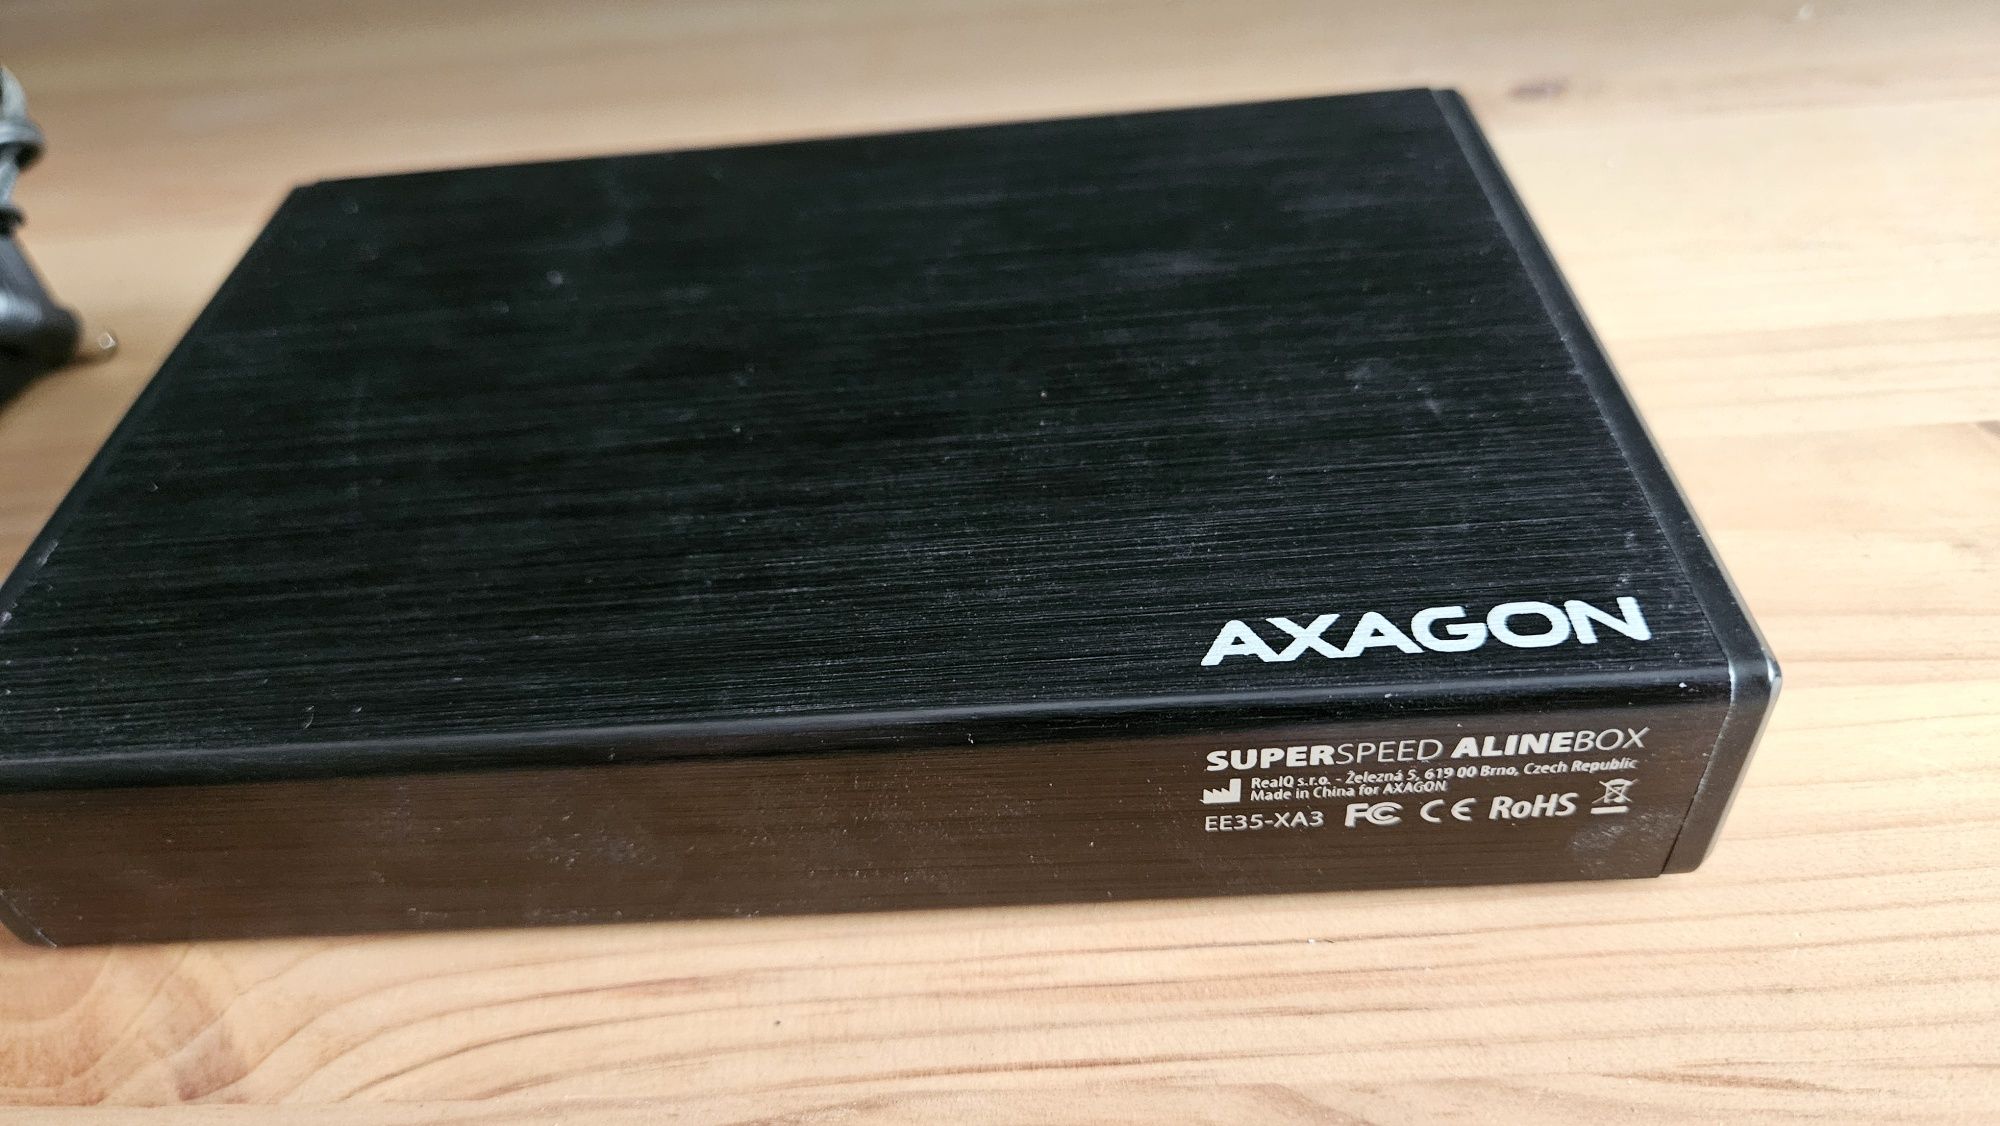 Rack extern Axagon EE35-XA3, USB 3.0, 3.5 inch SATA HDD, Aluminiu